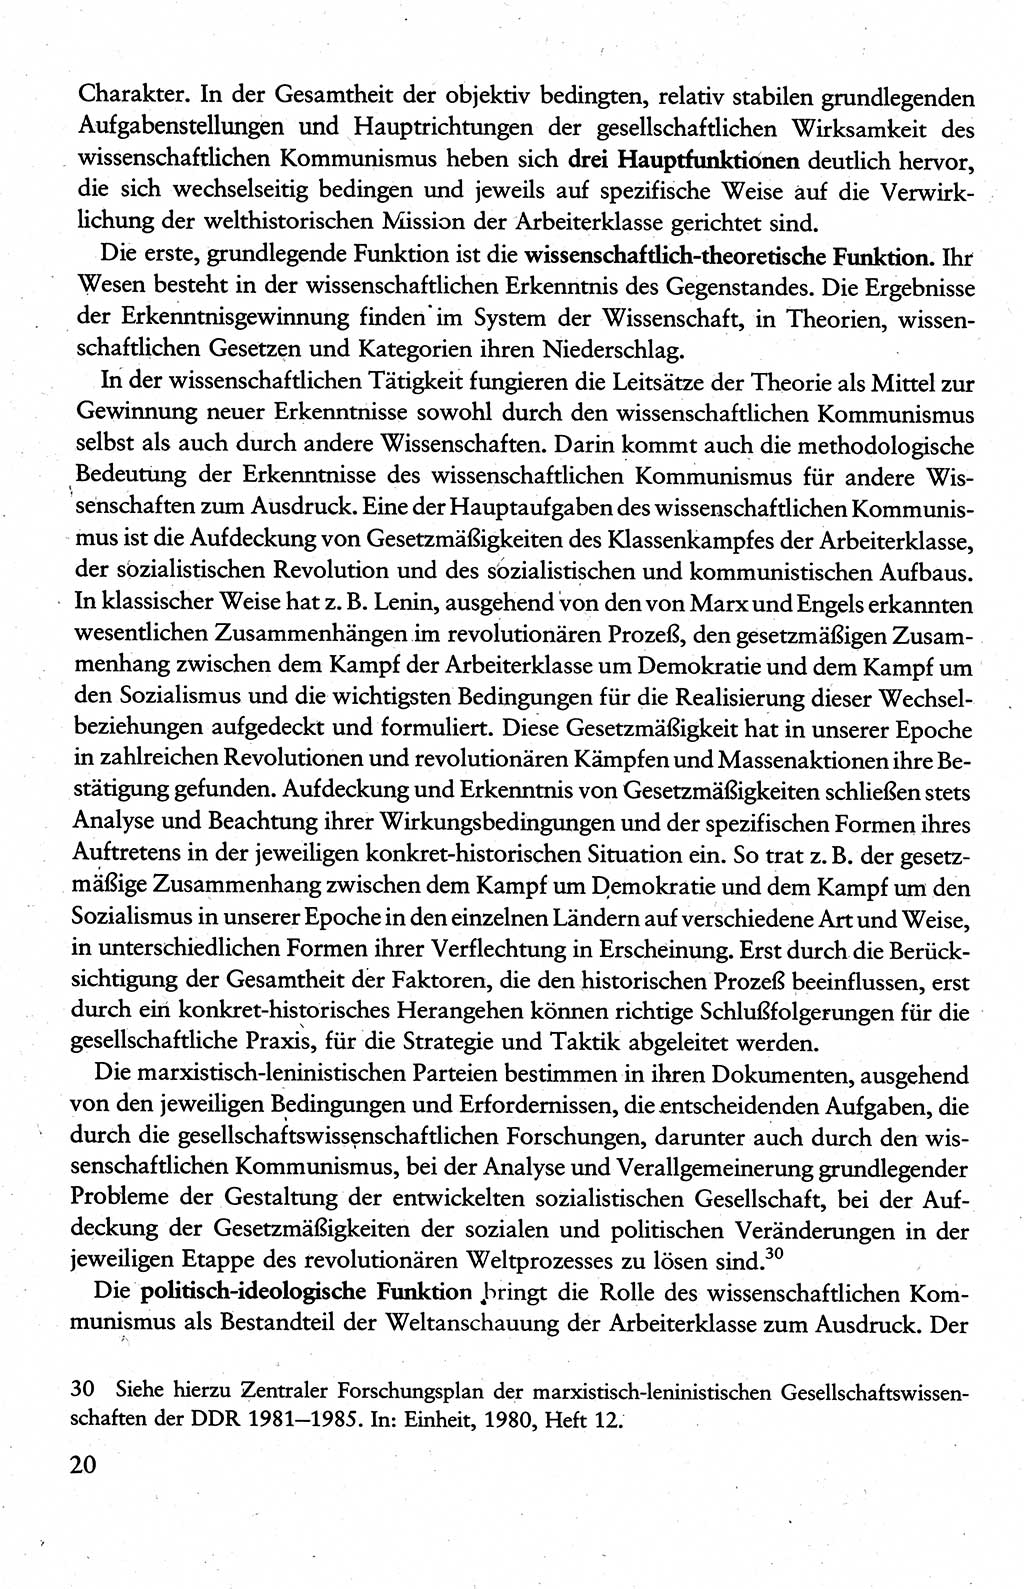 Wissenschaftlicher Kommunismus [Deutsche Demokratische Republik (DDR)], Lehrbuch für das marxistisch-leninistische Grundlagenstudium 1983, Seite 20 (Wiss. Komm. DDR Lb. 1983, S. 20)